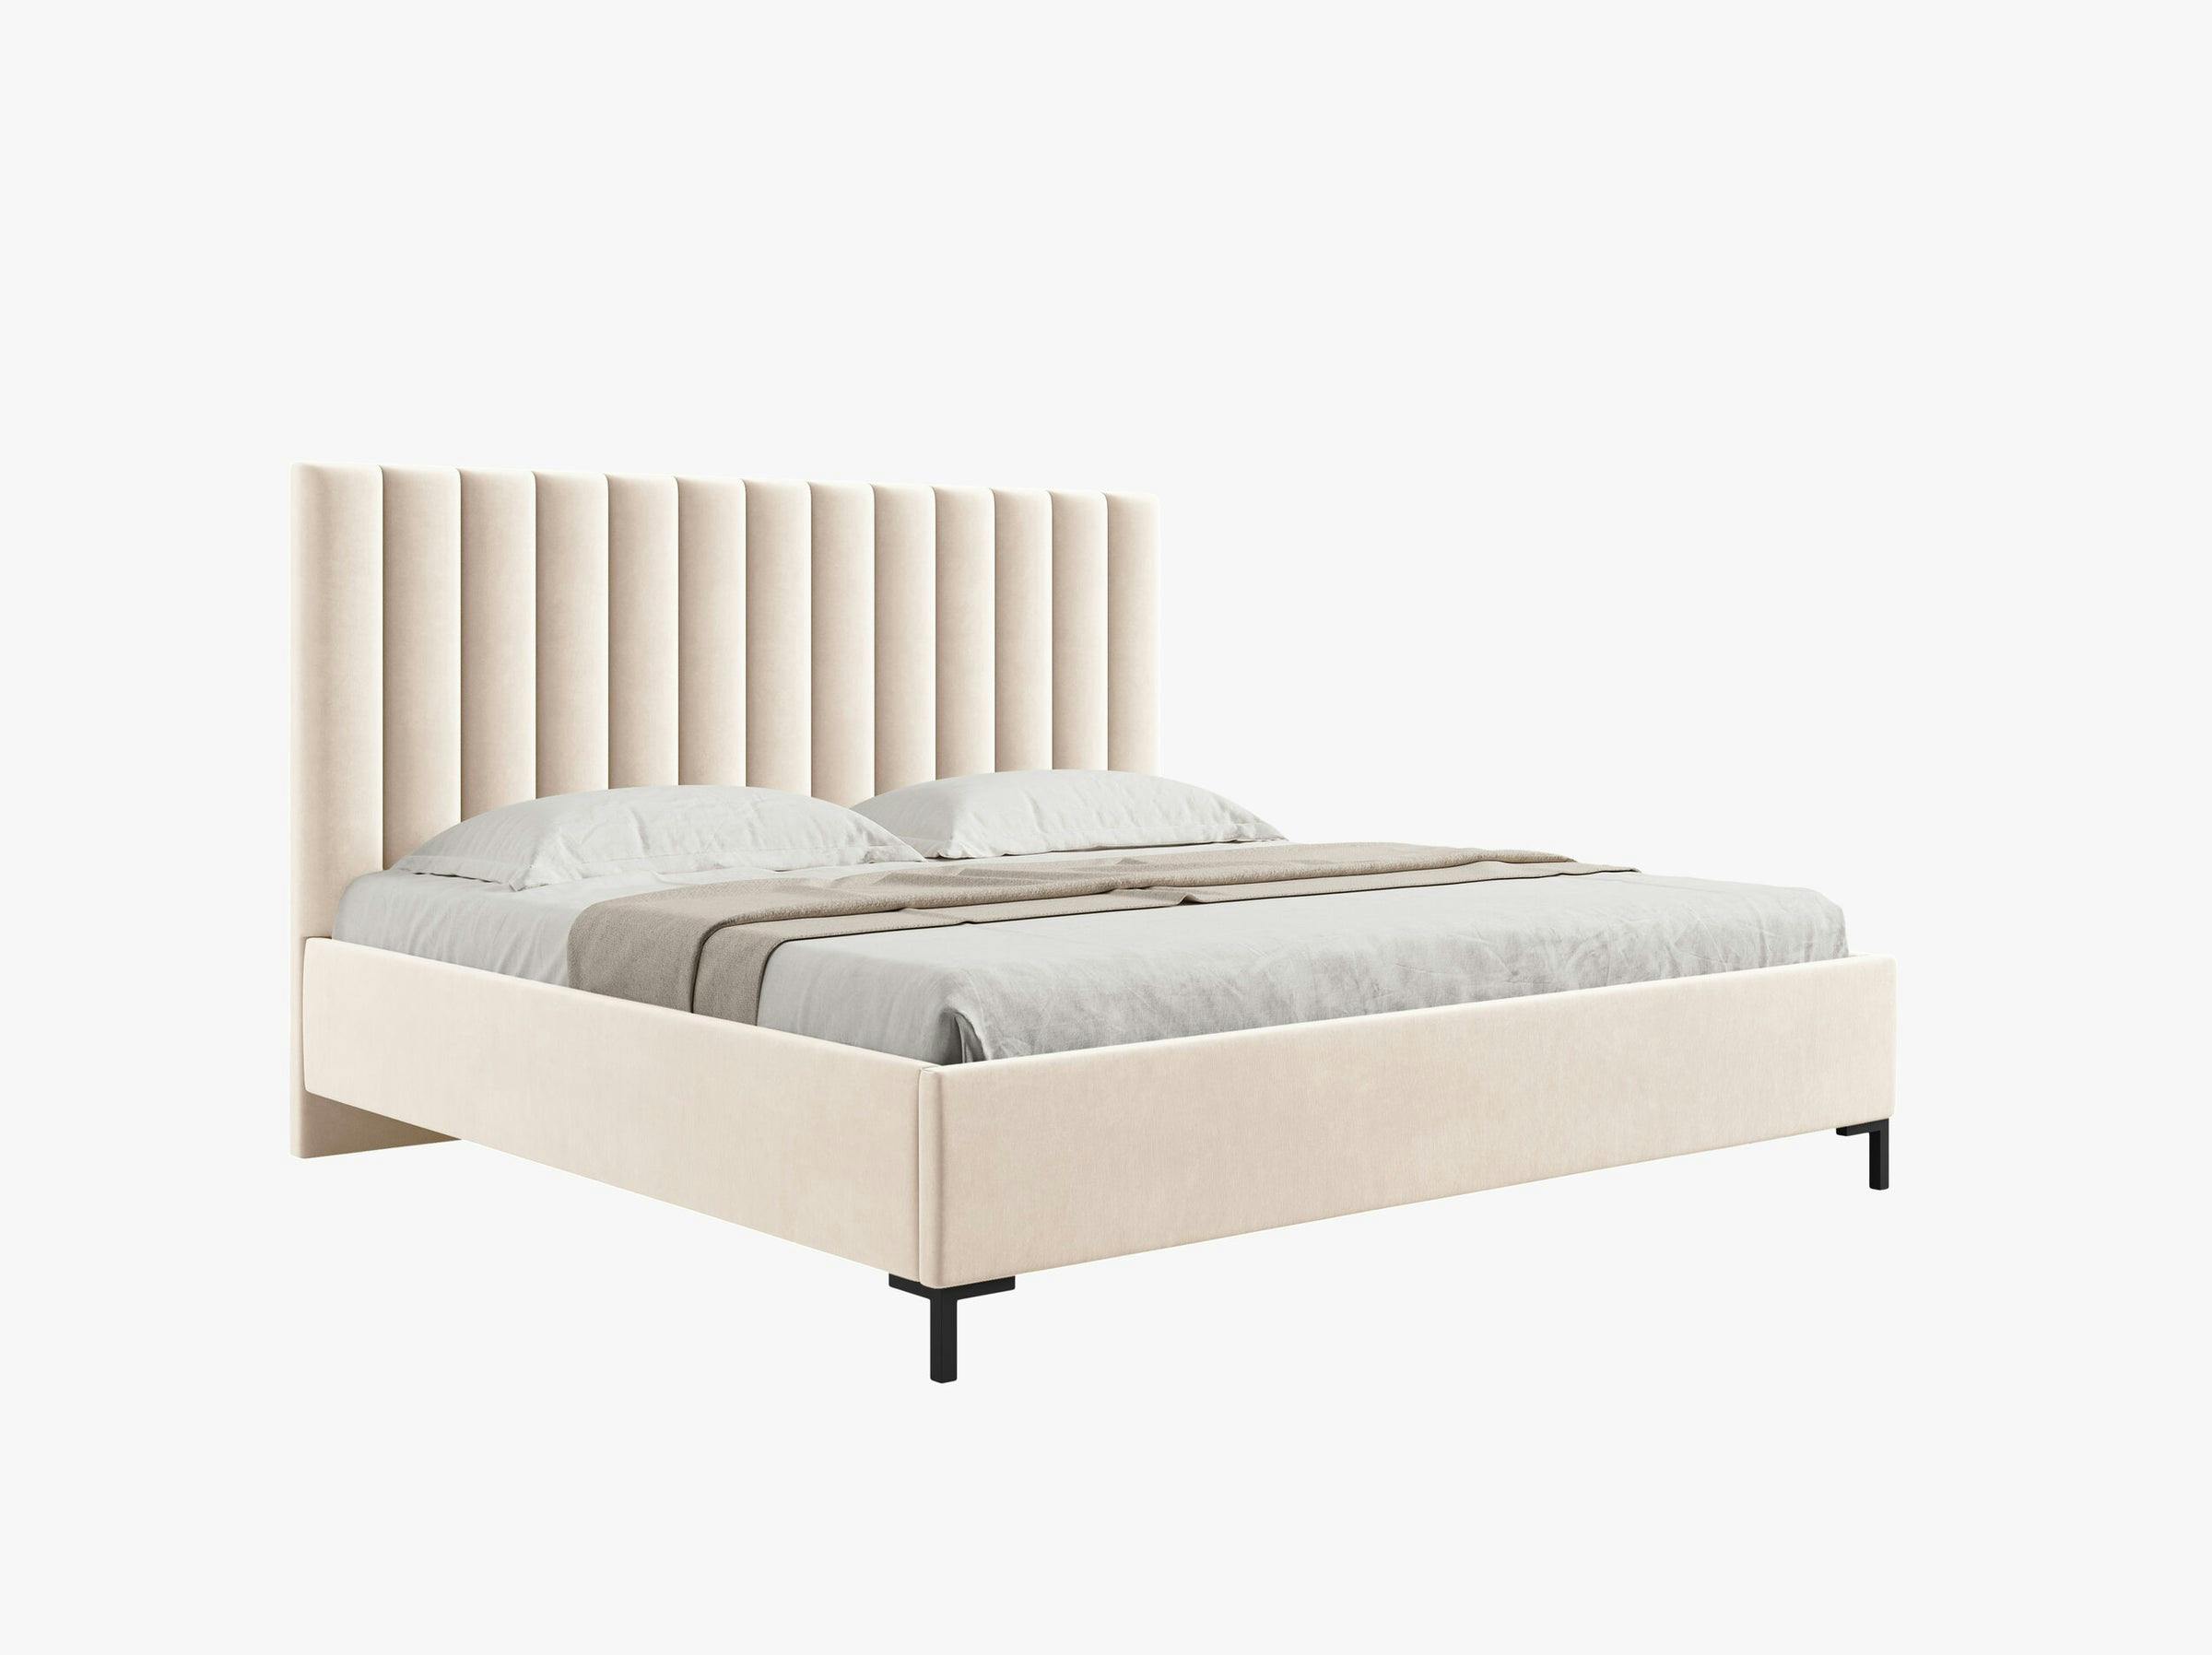 Allison beds & mattresses velvet light beige